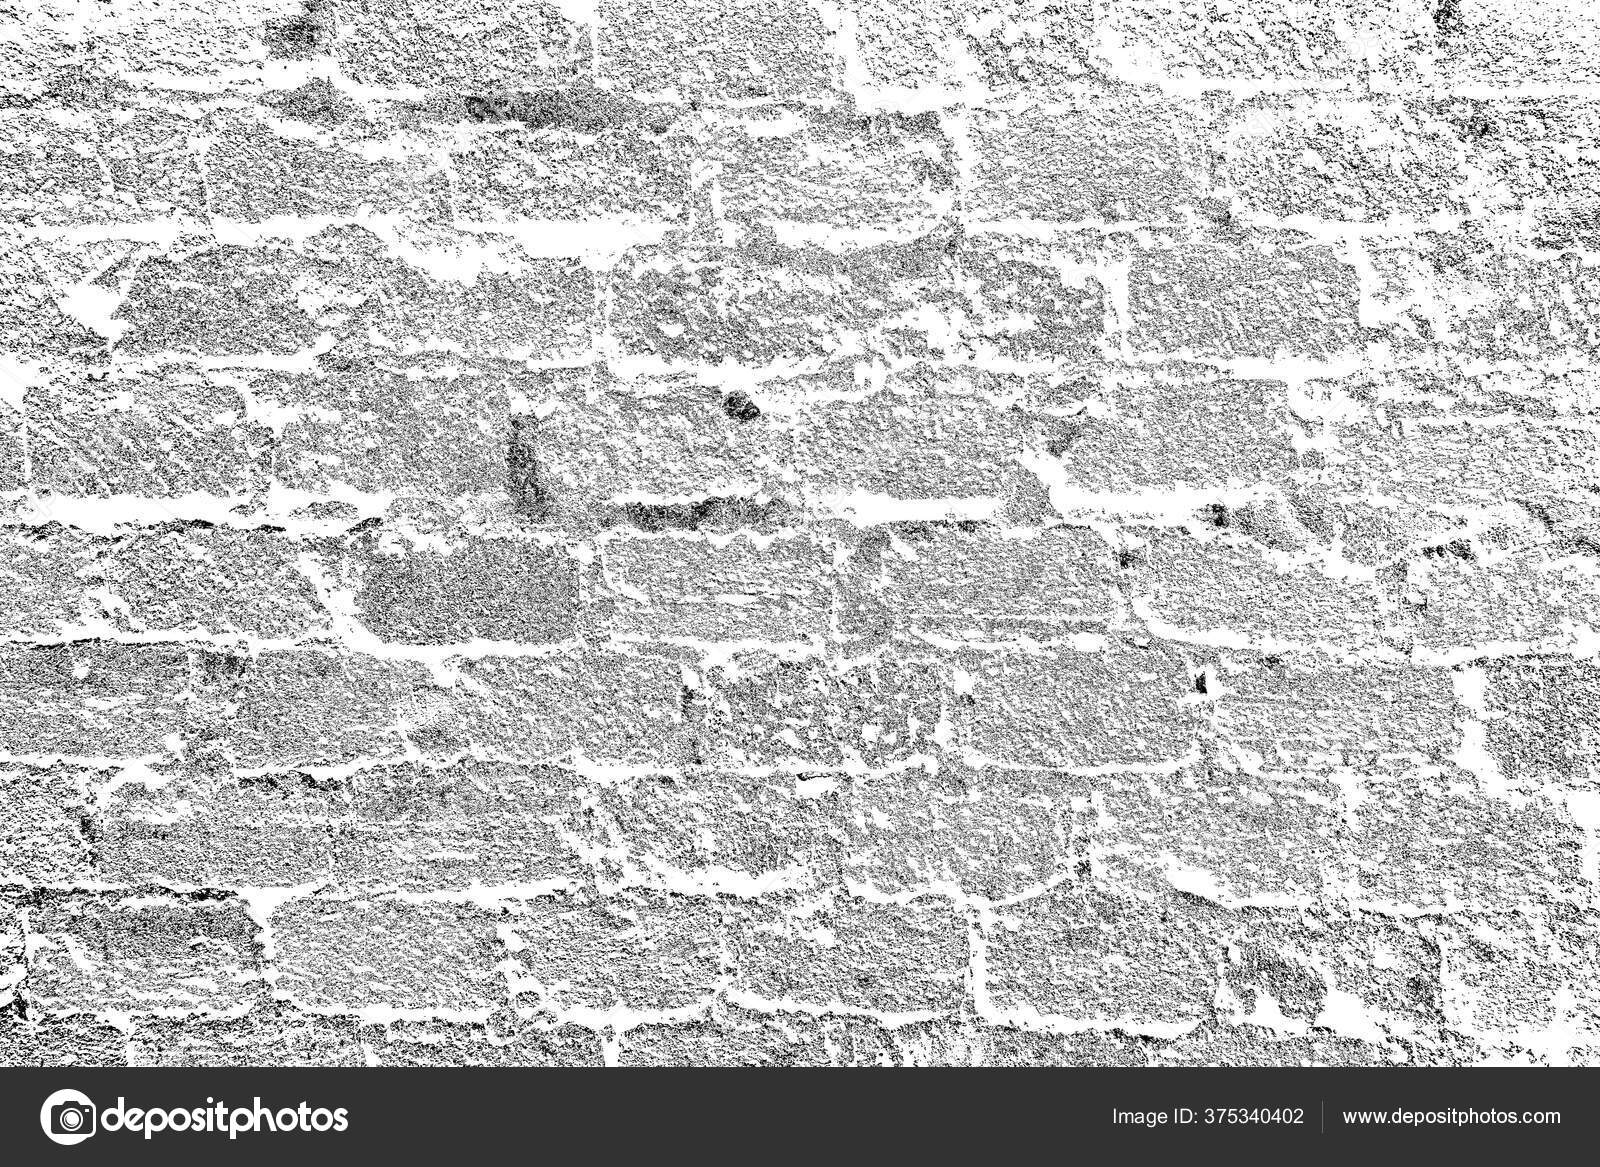 Abstrakter Hintergrund Einfarbige Textur Schwarz Weiss Strukturierter Hintergrund Stockfotografie Lizenzfreie Fotos C Ivanvbtv Depositphotos